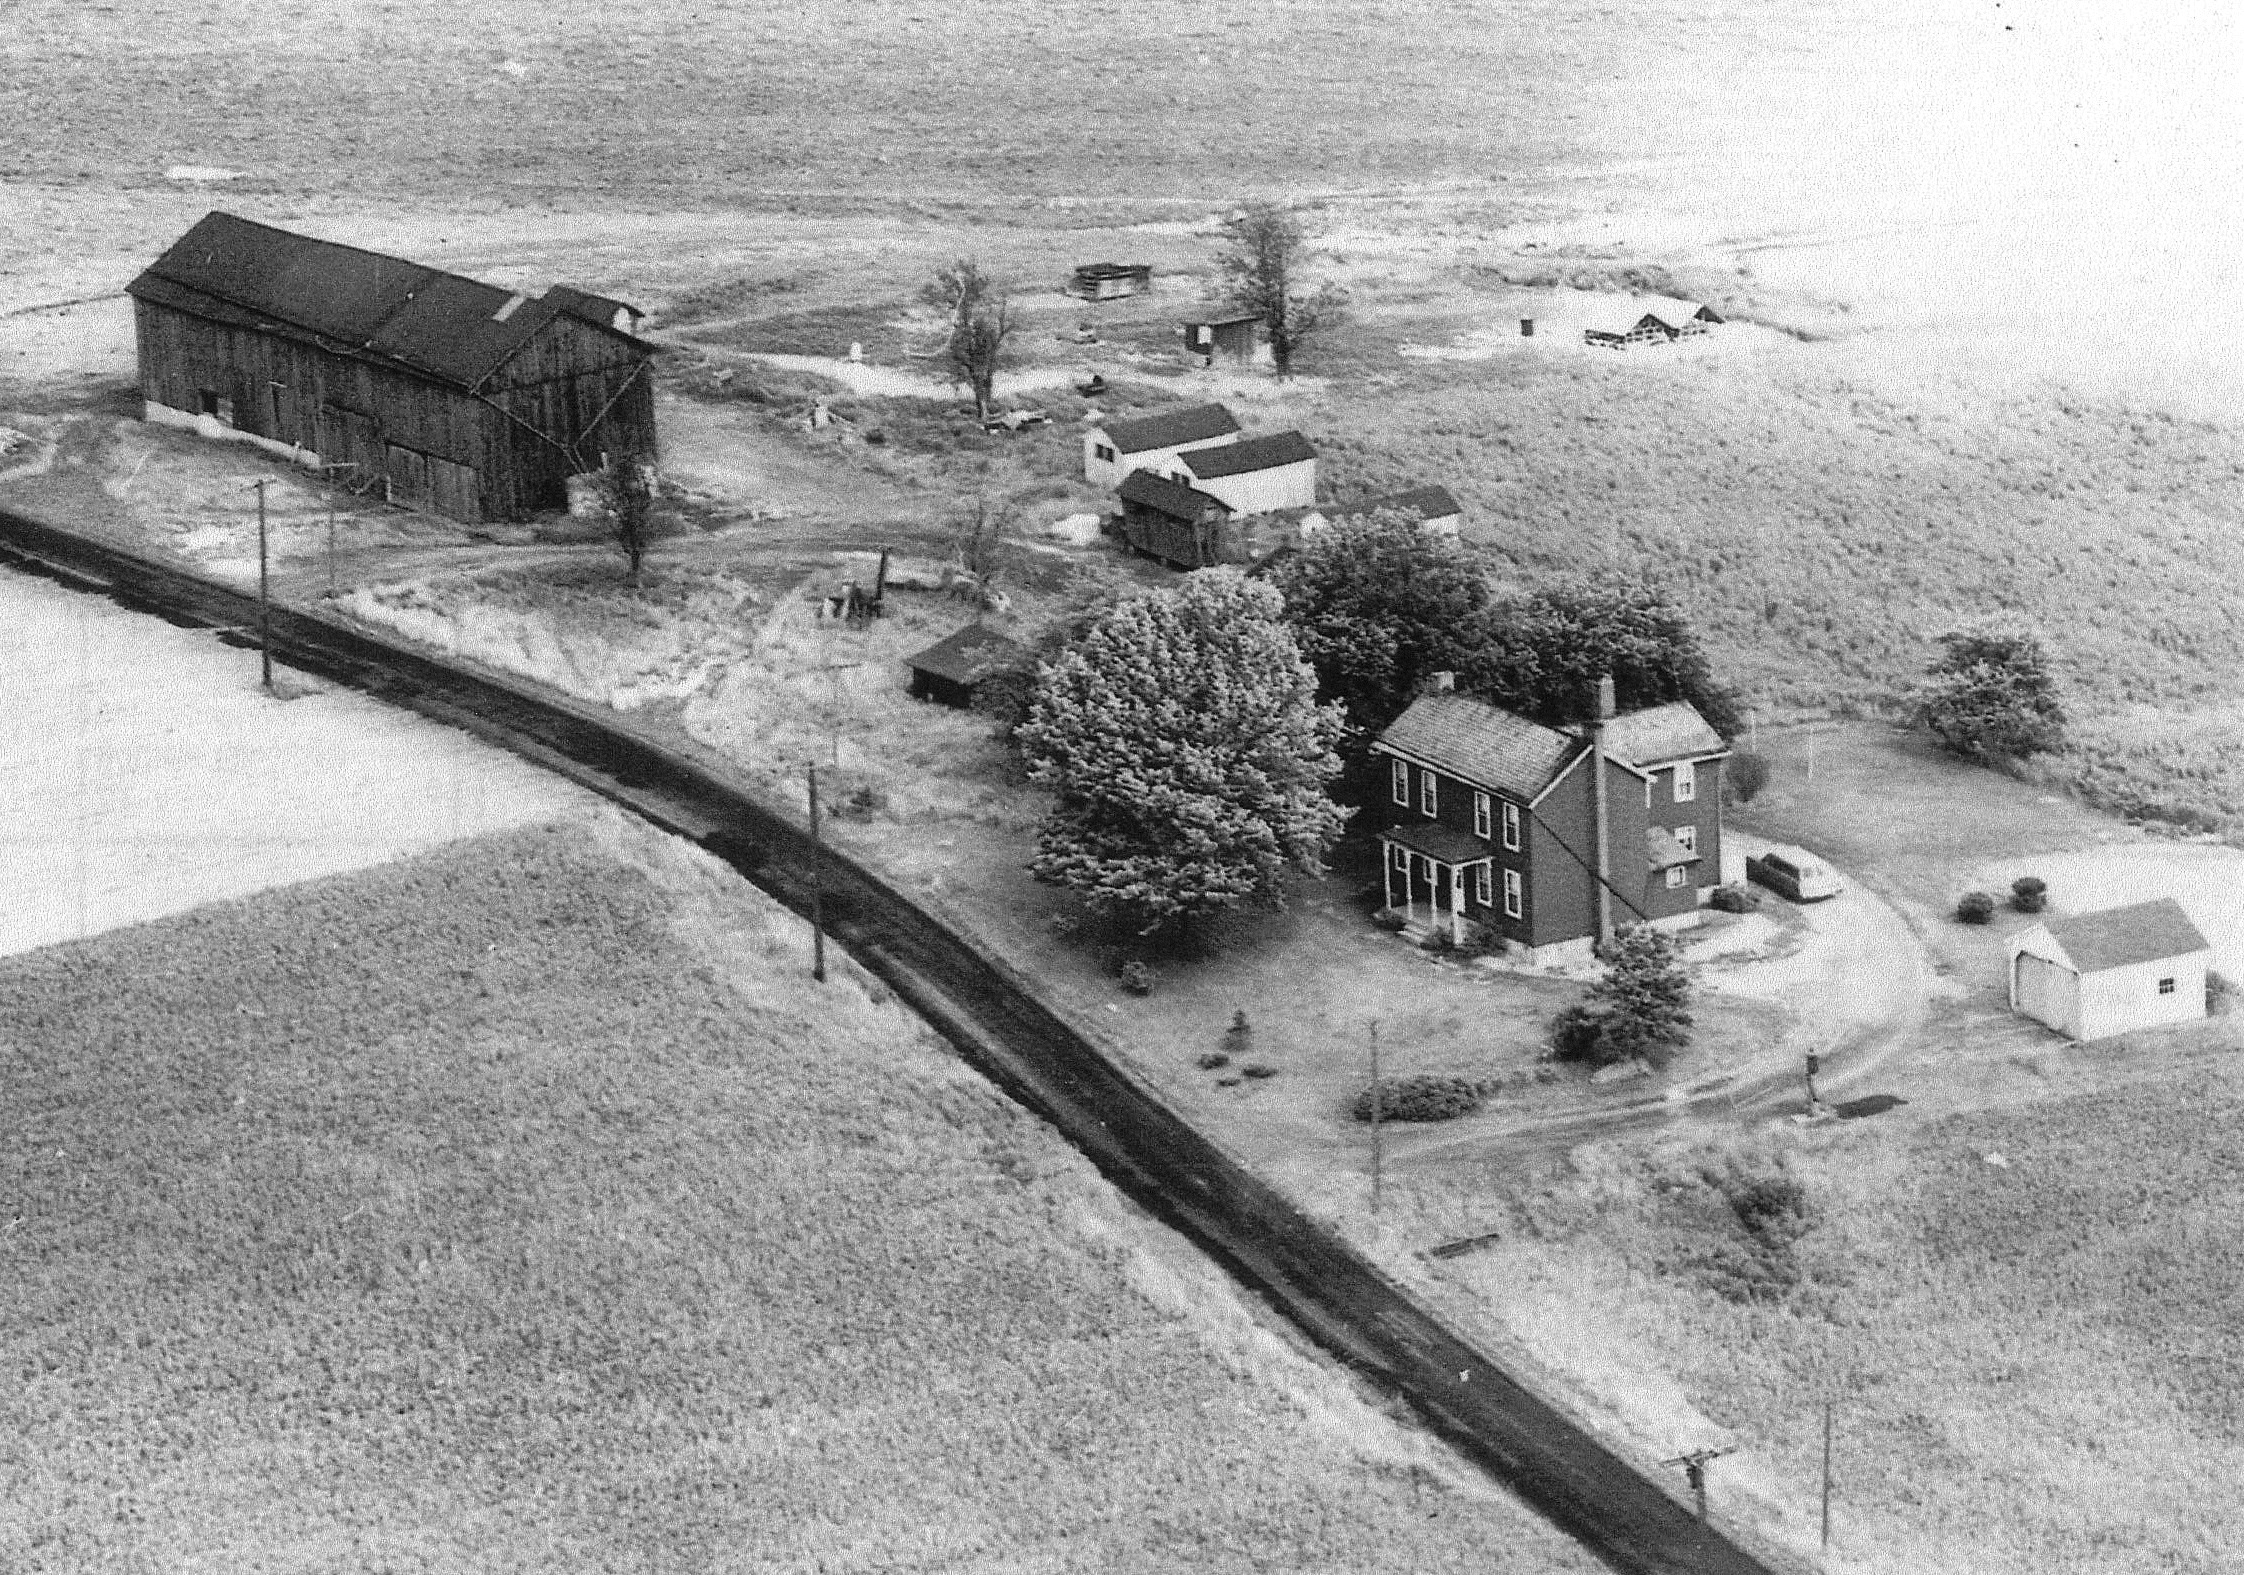 Leslie-Gray farm & homestead Bairdford, West Deer Twp., PA